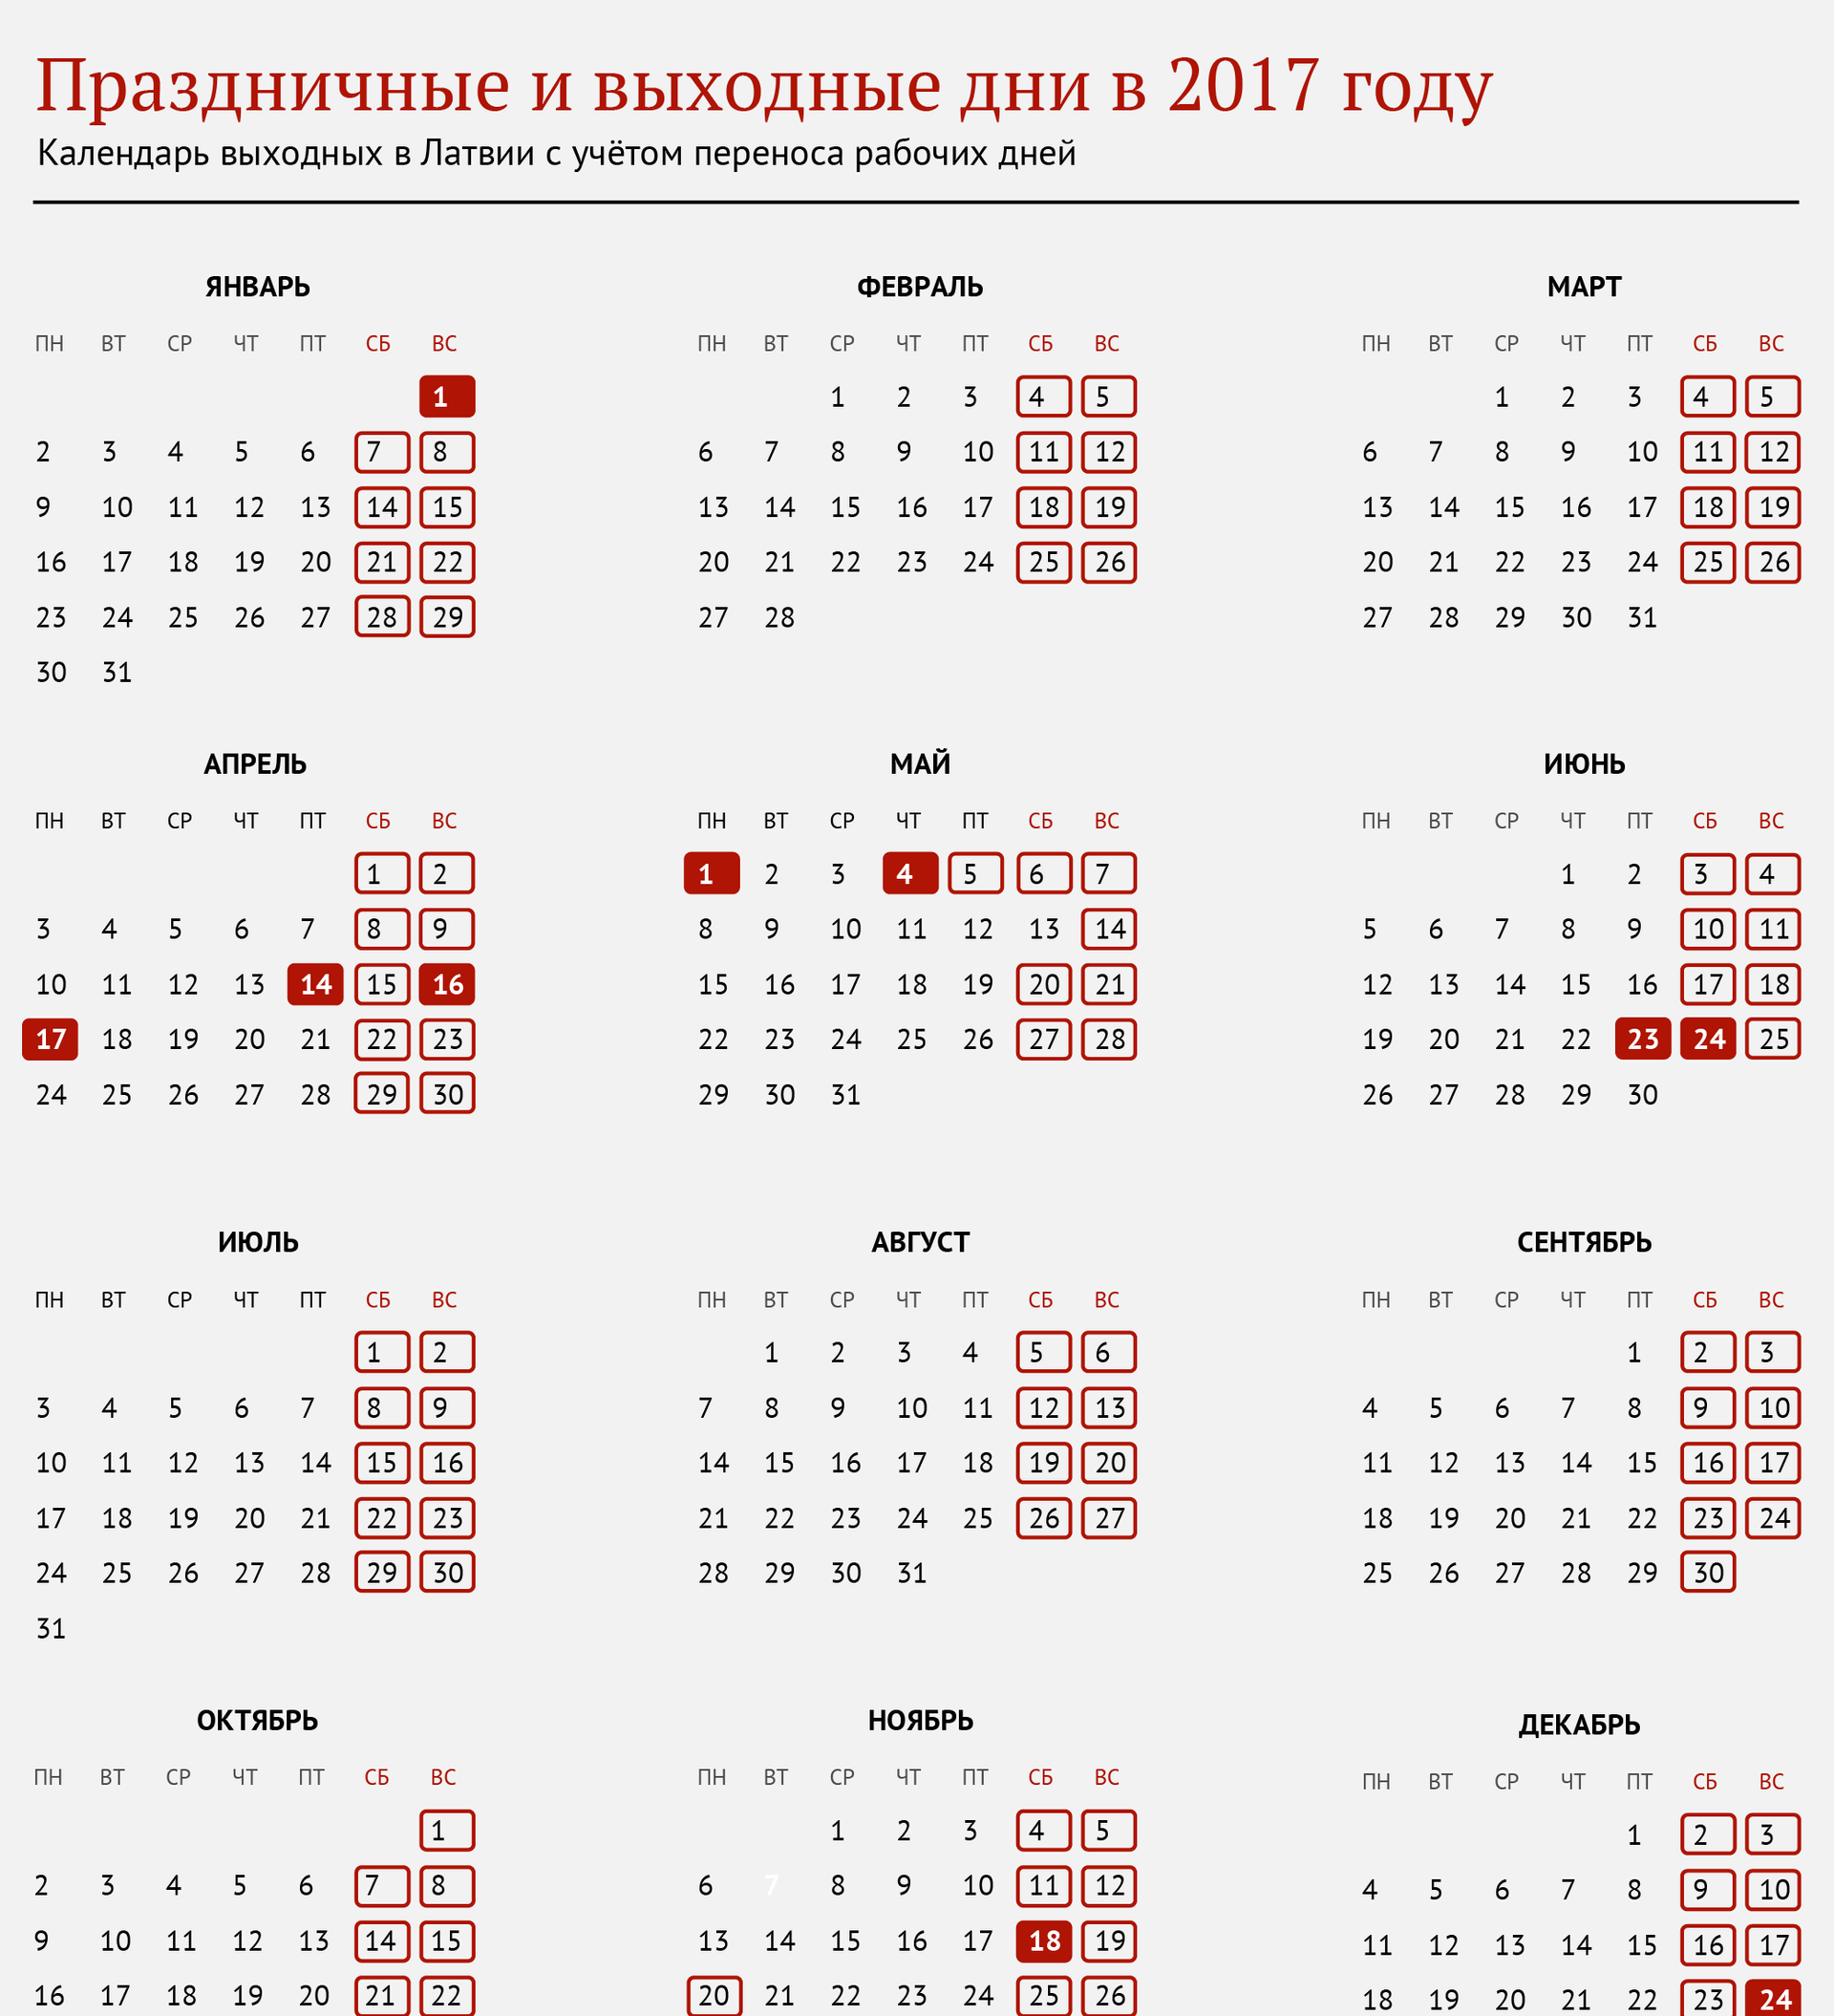 Календарь праздников. Выходные дни 2017. Выходные и праздничные дни в 2017. Праздники в 2017 и нерабочие праздничные дни. В 2017 году отметит